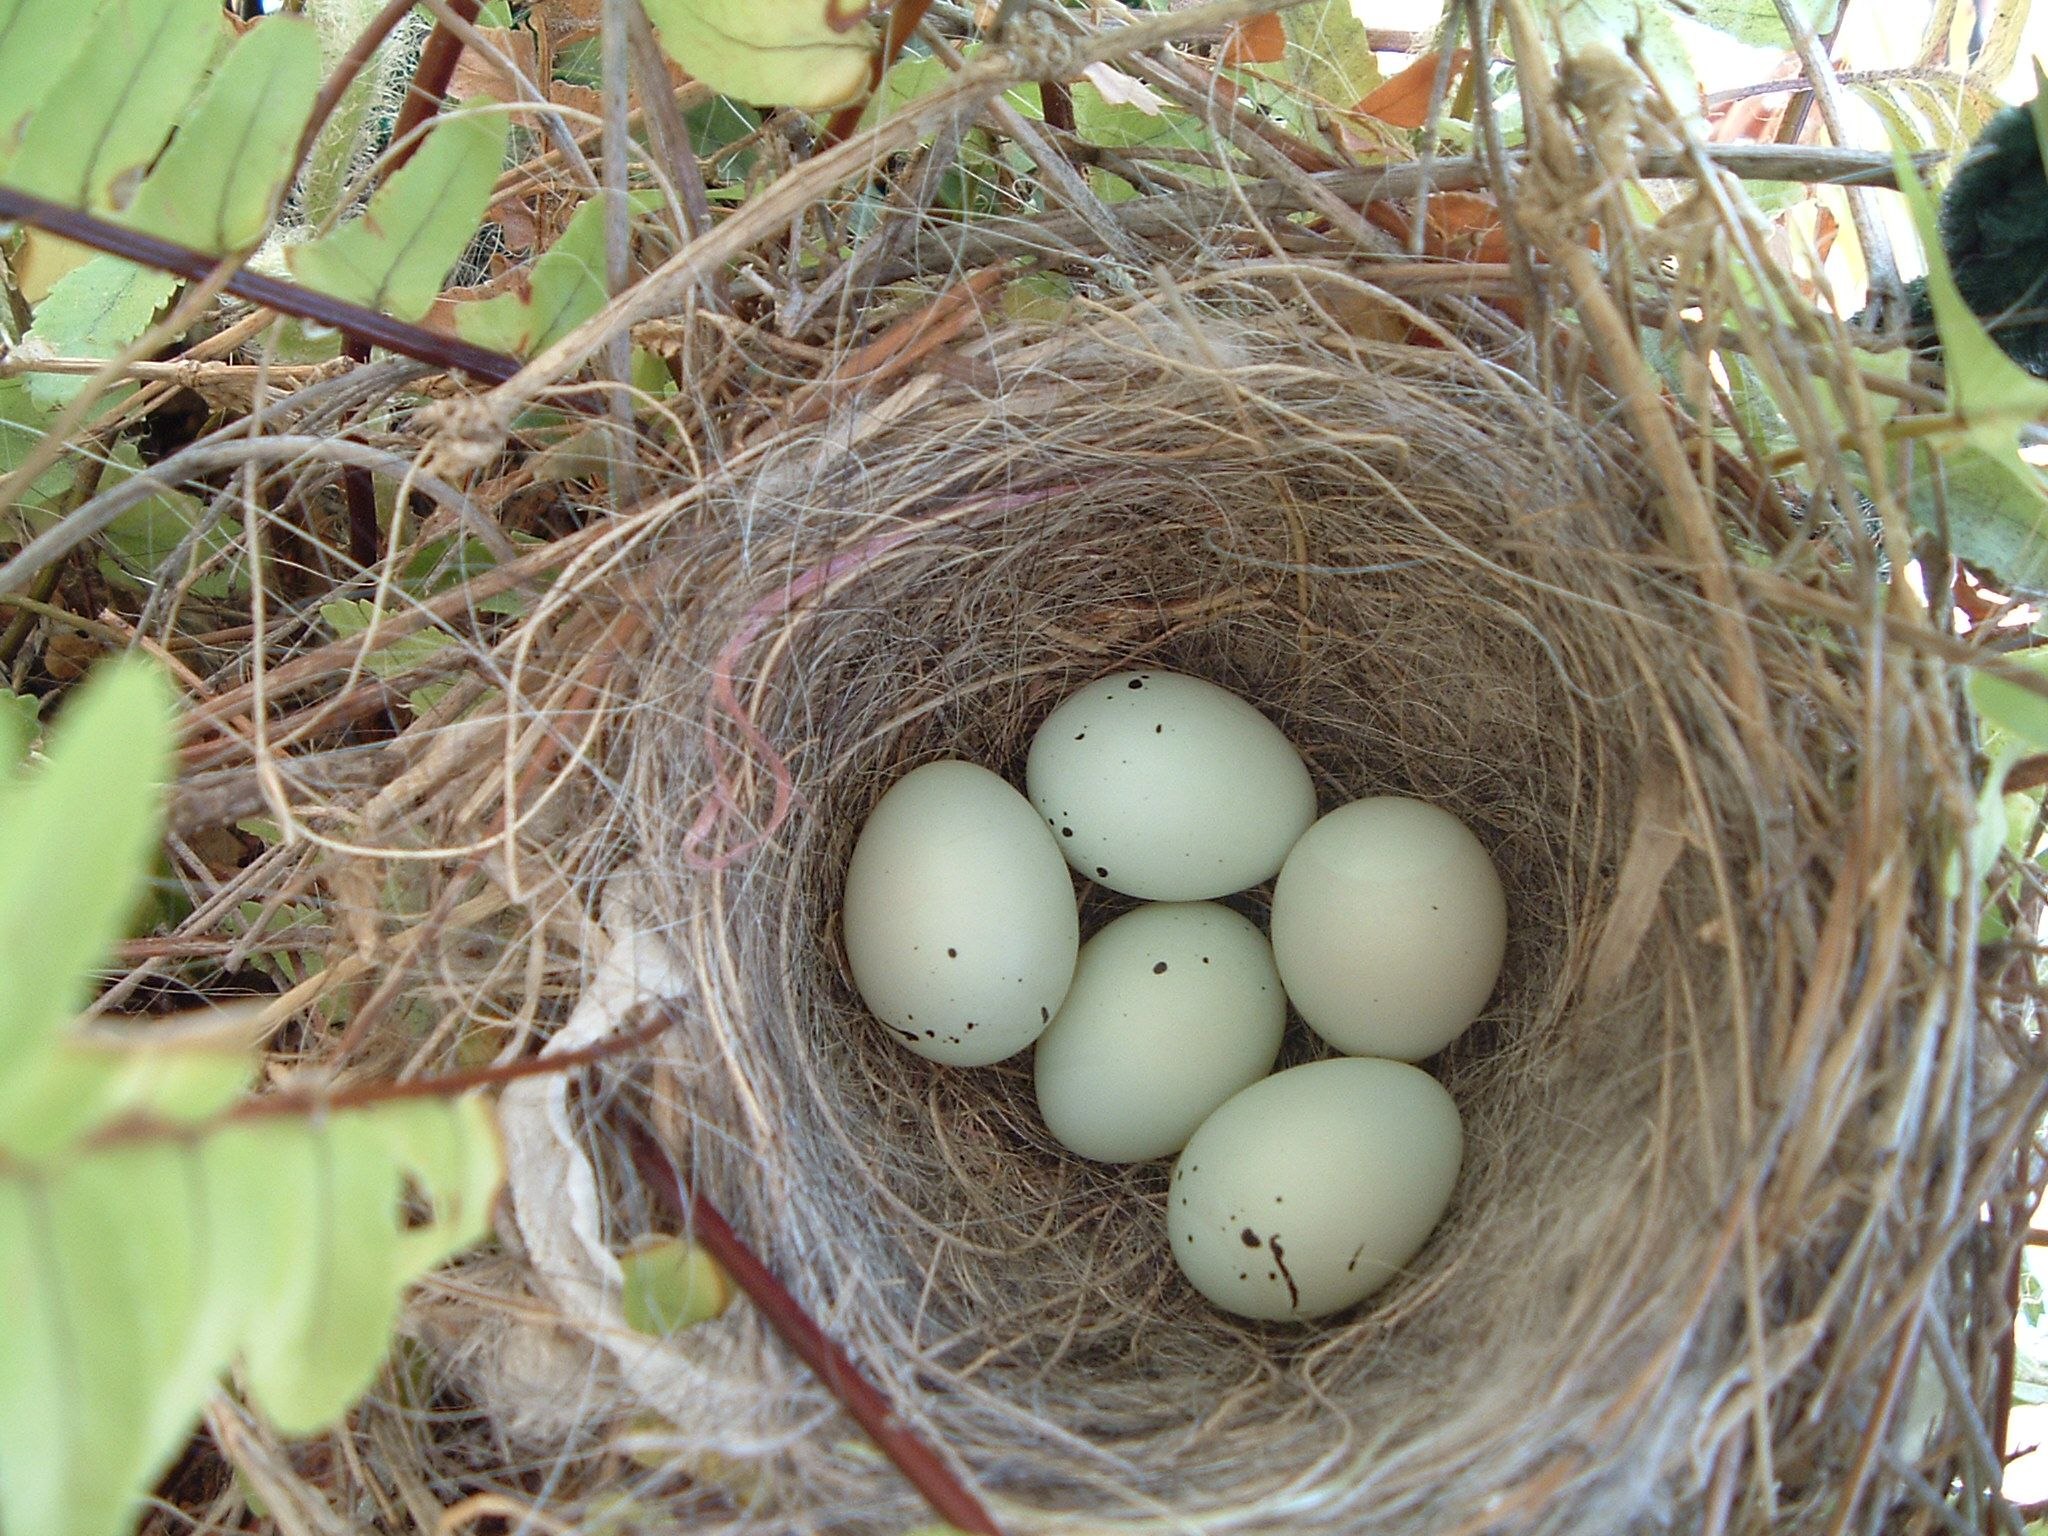 Their nests. Гнездо Авгурея. Остара гнездо. Сарыч гнездо яйцо. Воробьинообразные гнезда.